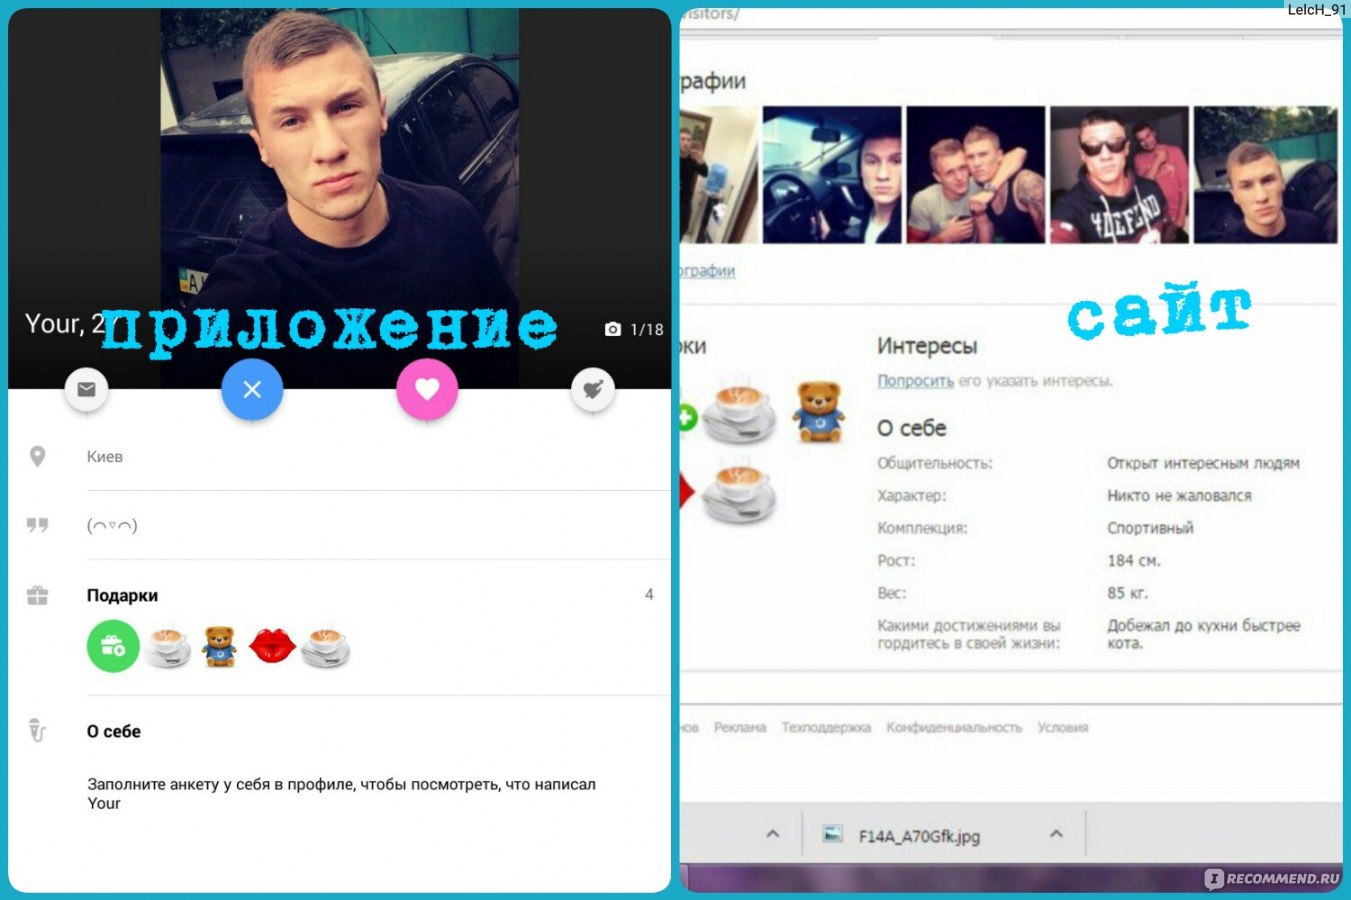 Topface Знакомства Вконтакте